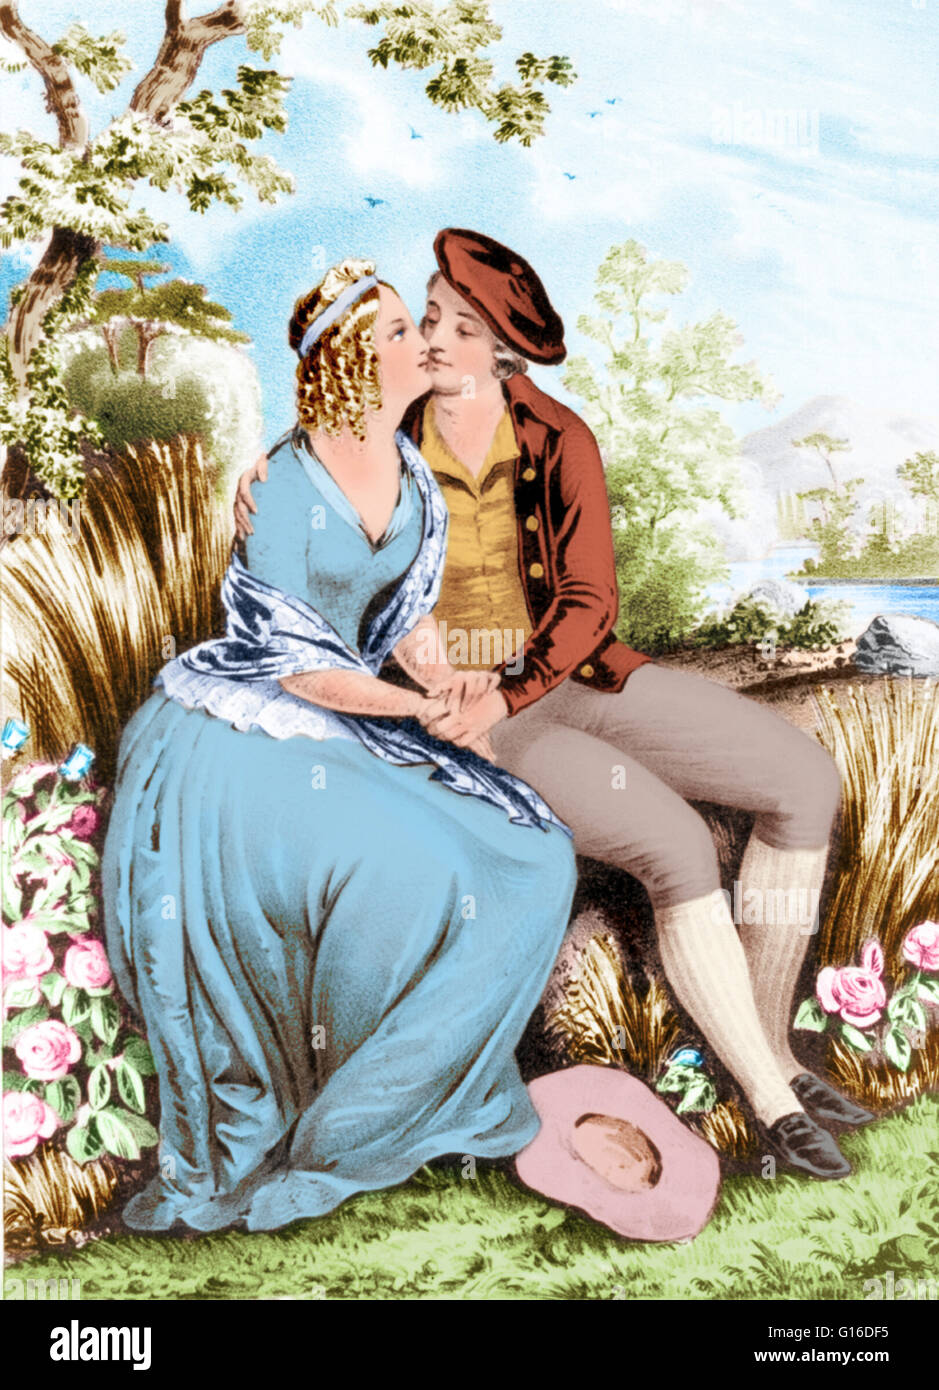 Litografía de Robert Burns y Mary Campbell sentado en un entorno de  bosques, tomados de las manos y besarse. Robert Burns (25 de enero de 1759  - 21 de julio de 1796)